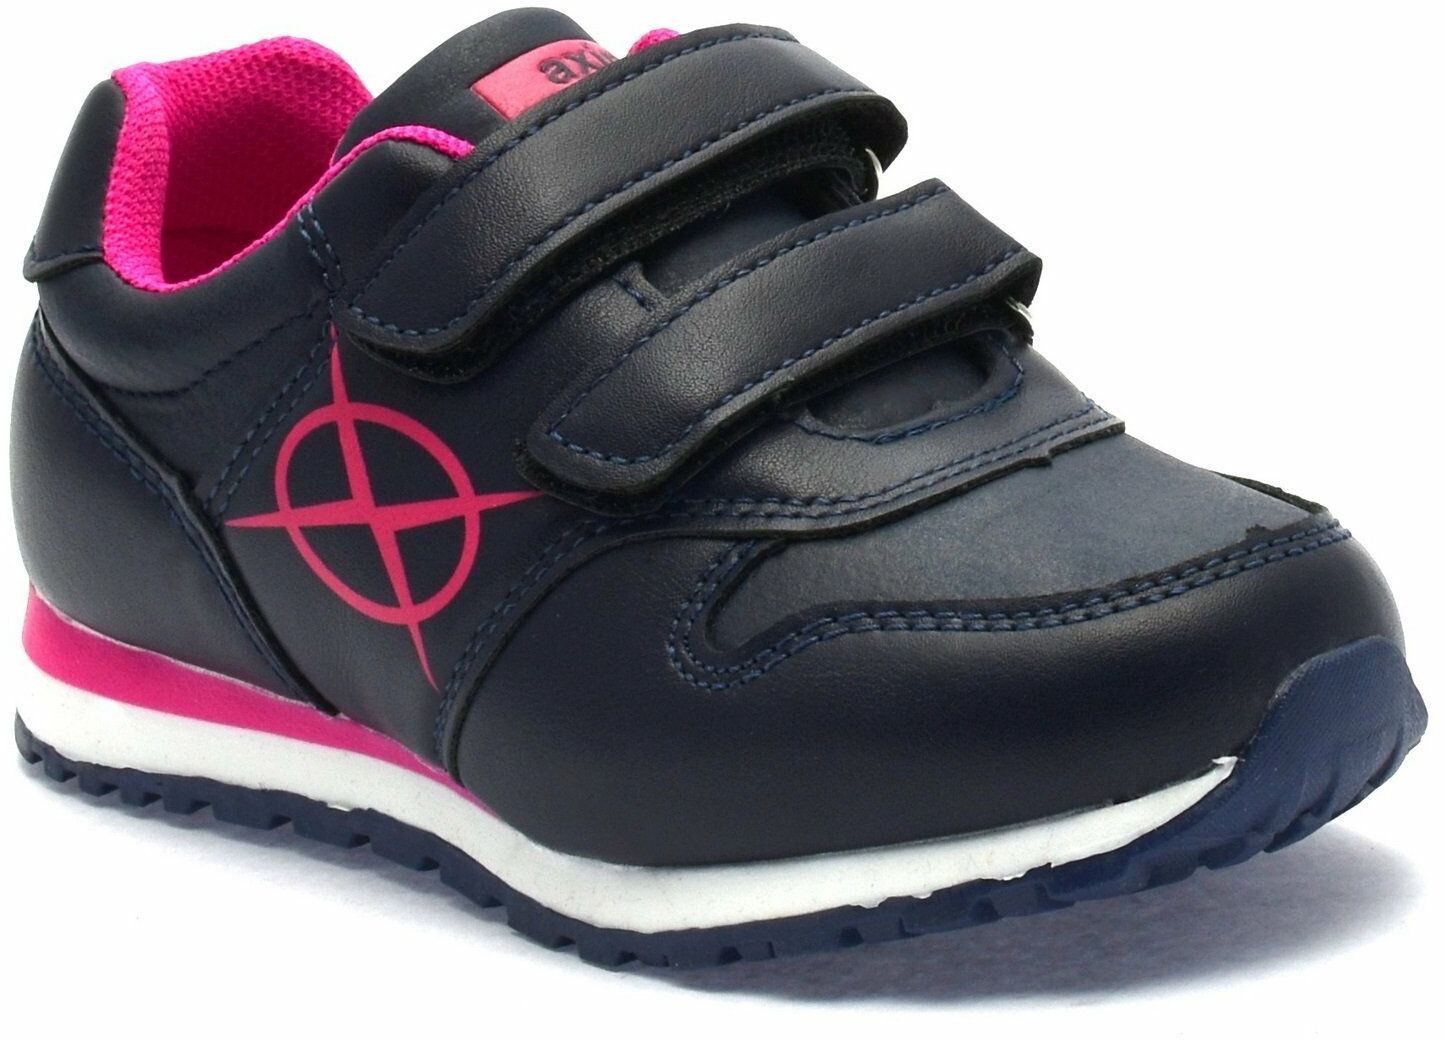 Buty sportowe dla dziewczynki Axim 61221 Granatowe